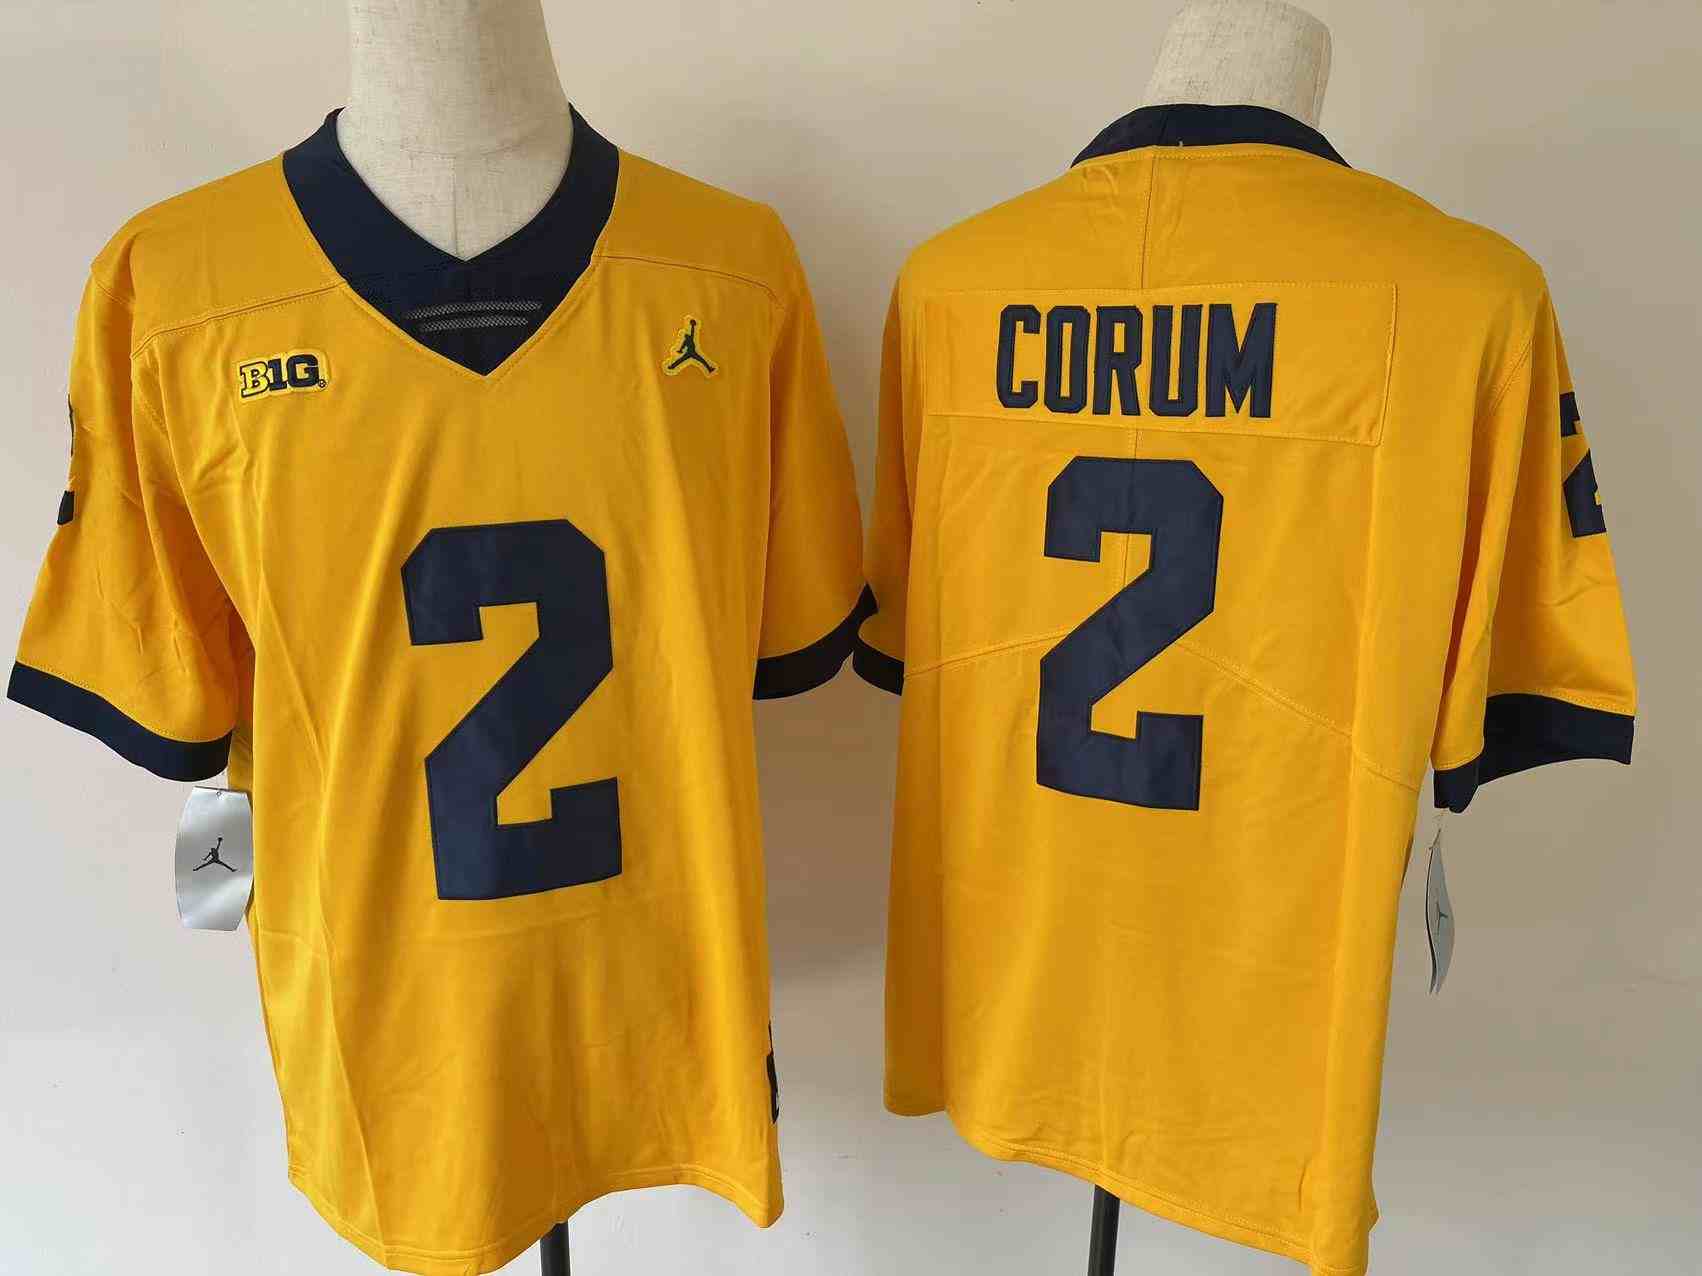 Youth Michigan Wolverines #2 CORUM Yellow Stitched Jersey